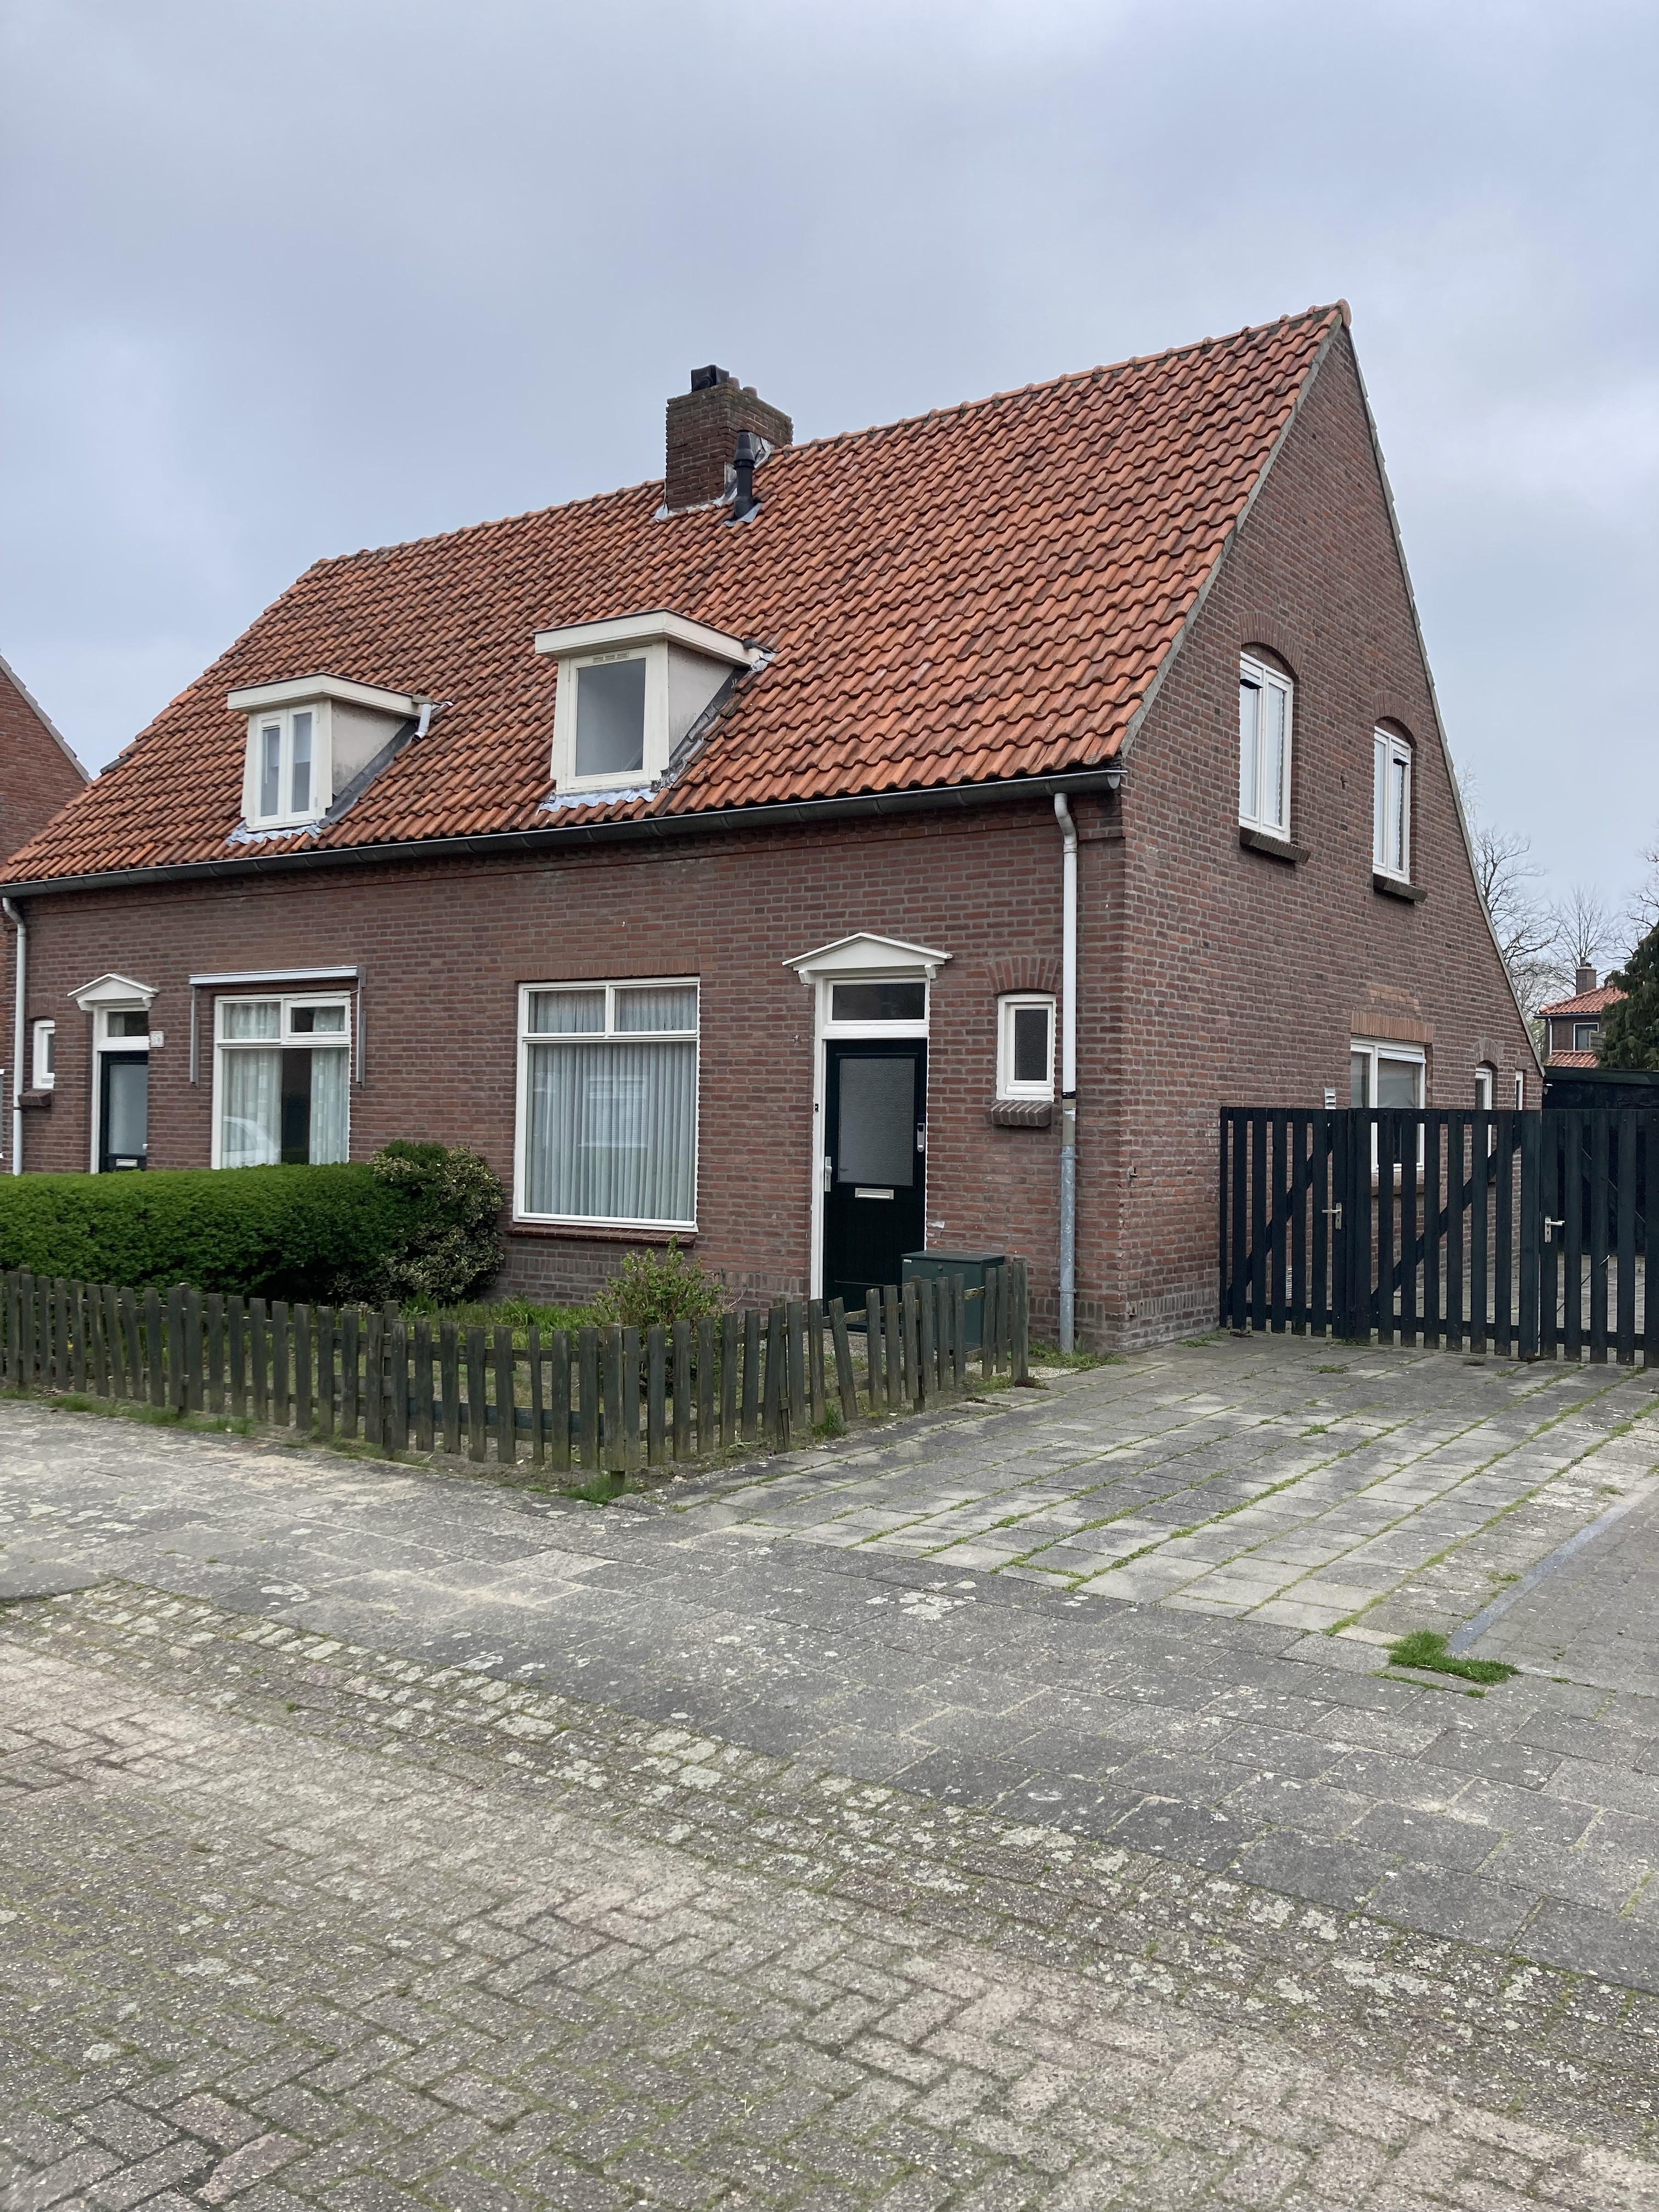 Prinses Beatrixstraat 54, 5061 TR Oisterwijk, Nederland